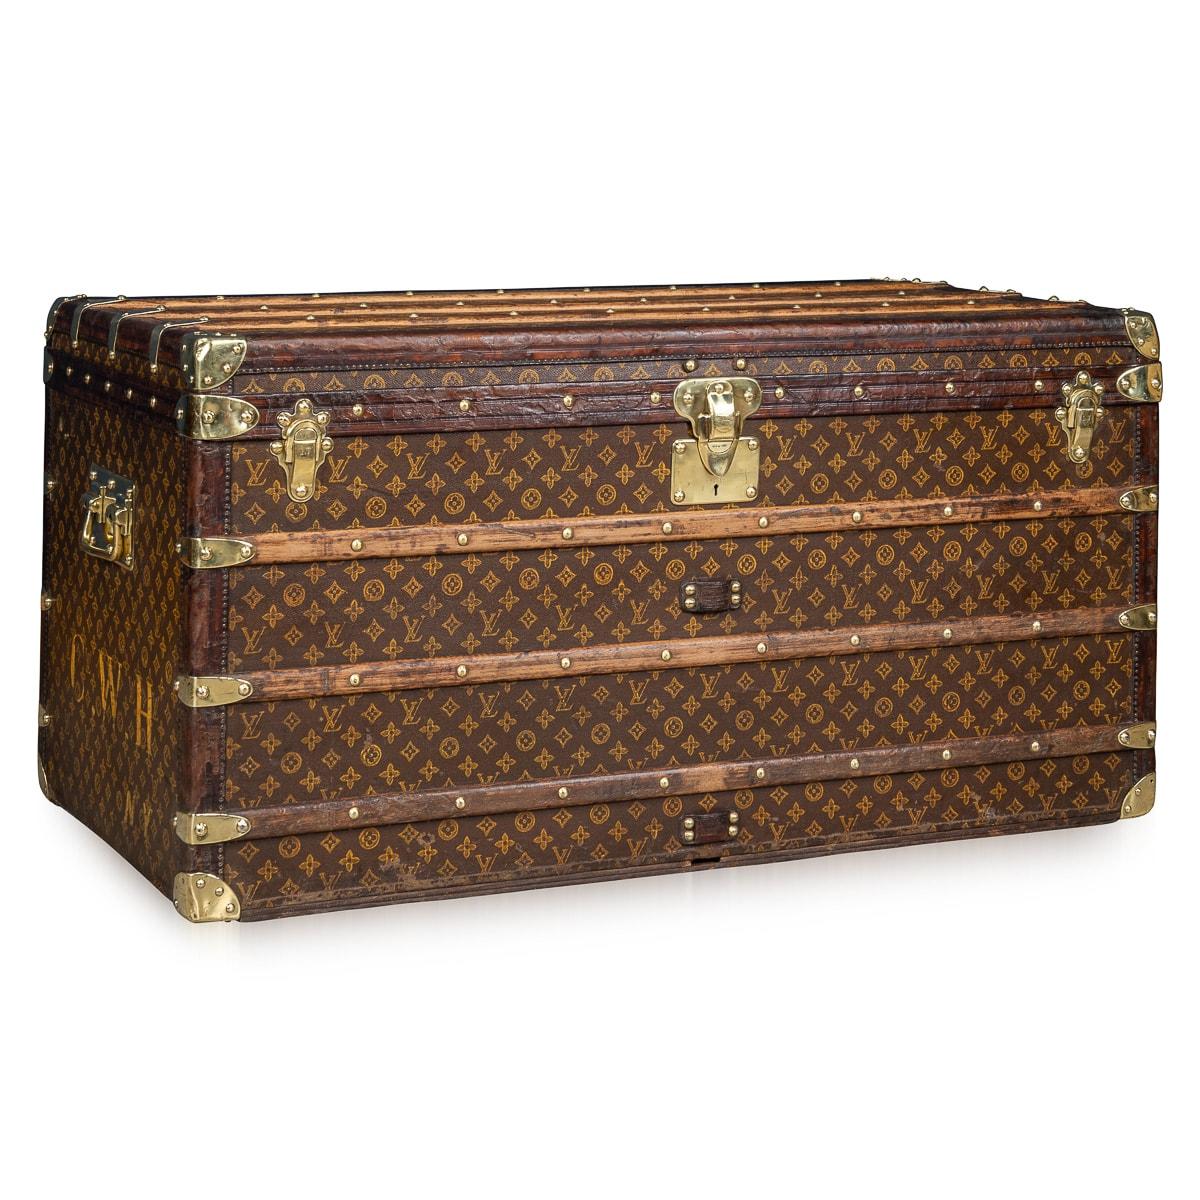 Eine exquisite und vollständige Louis Vuitton-Truhe aus der ersten Hälfte des 20. Jahrhunderts. Der Koffer ist ein unverzichtbarer Gegenstand für die reisende Elite seiner Zeit. Er ist mit dem kultigen LV-Monogramm aus Segeltuch verziert, das von